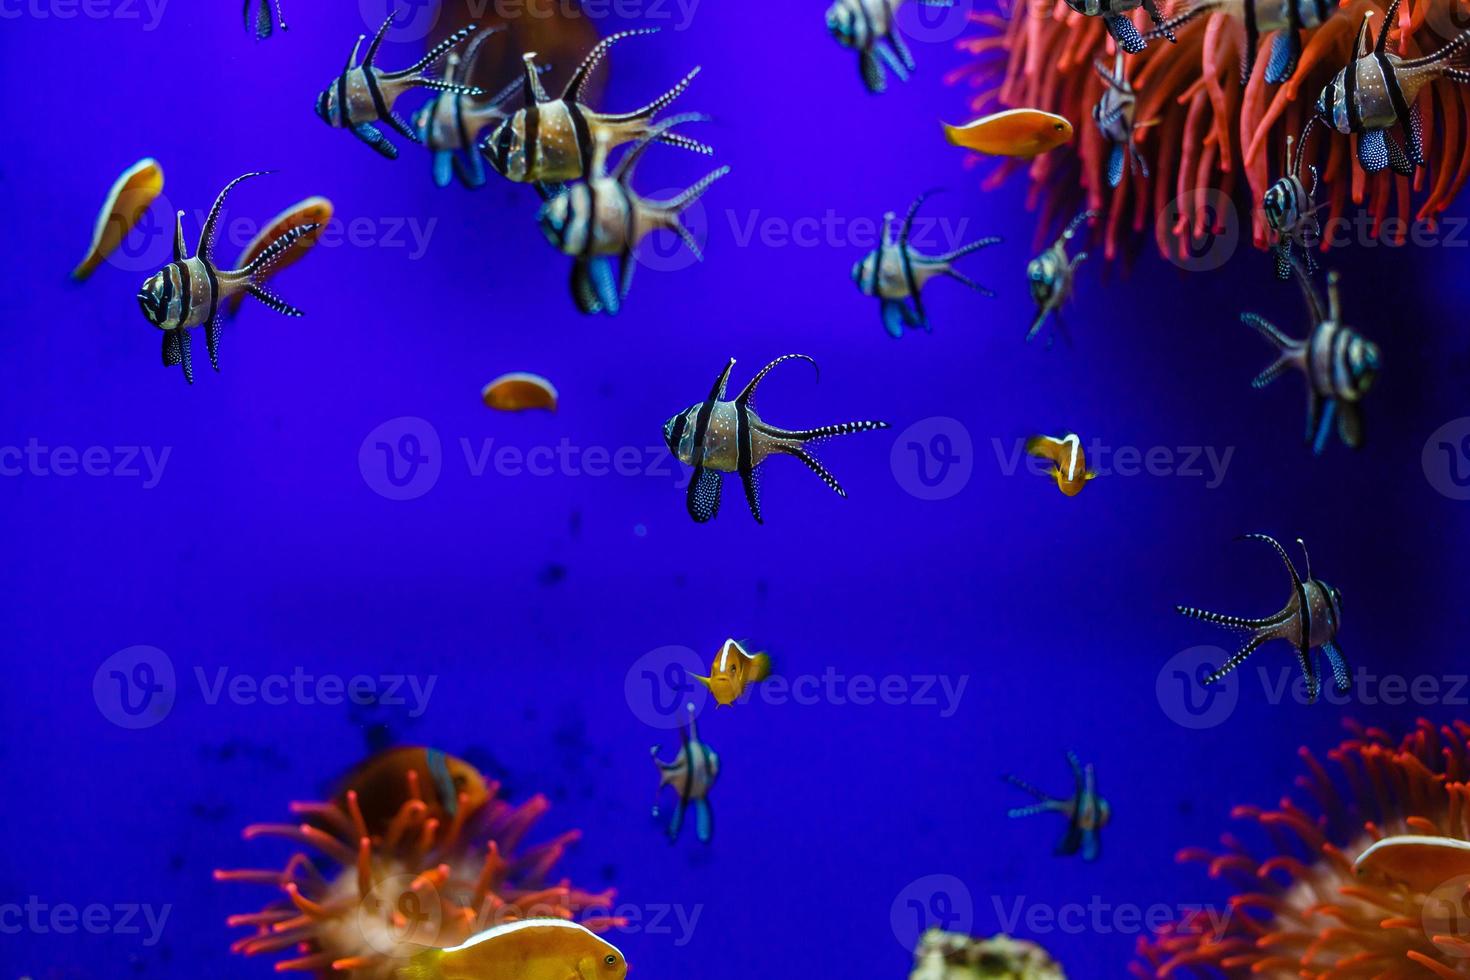 petit poisson coloré, récif de corail brillant dans l'aquarium. la vie sous-marine. photo